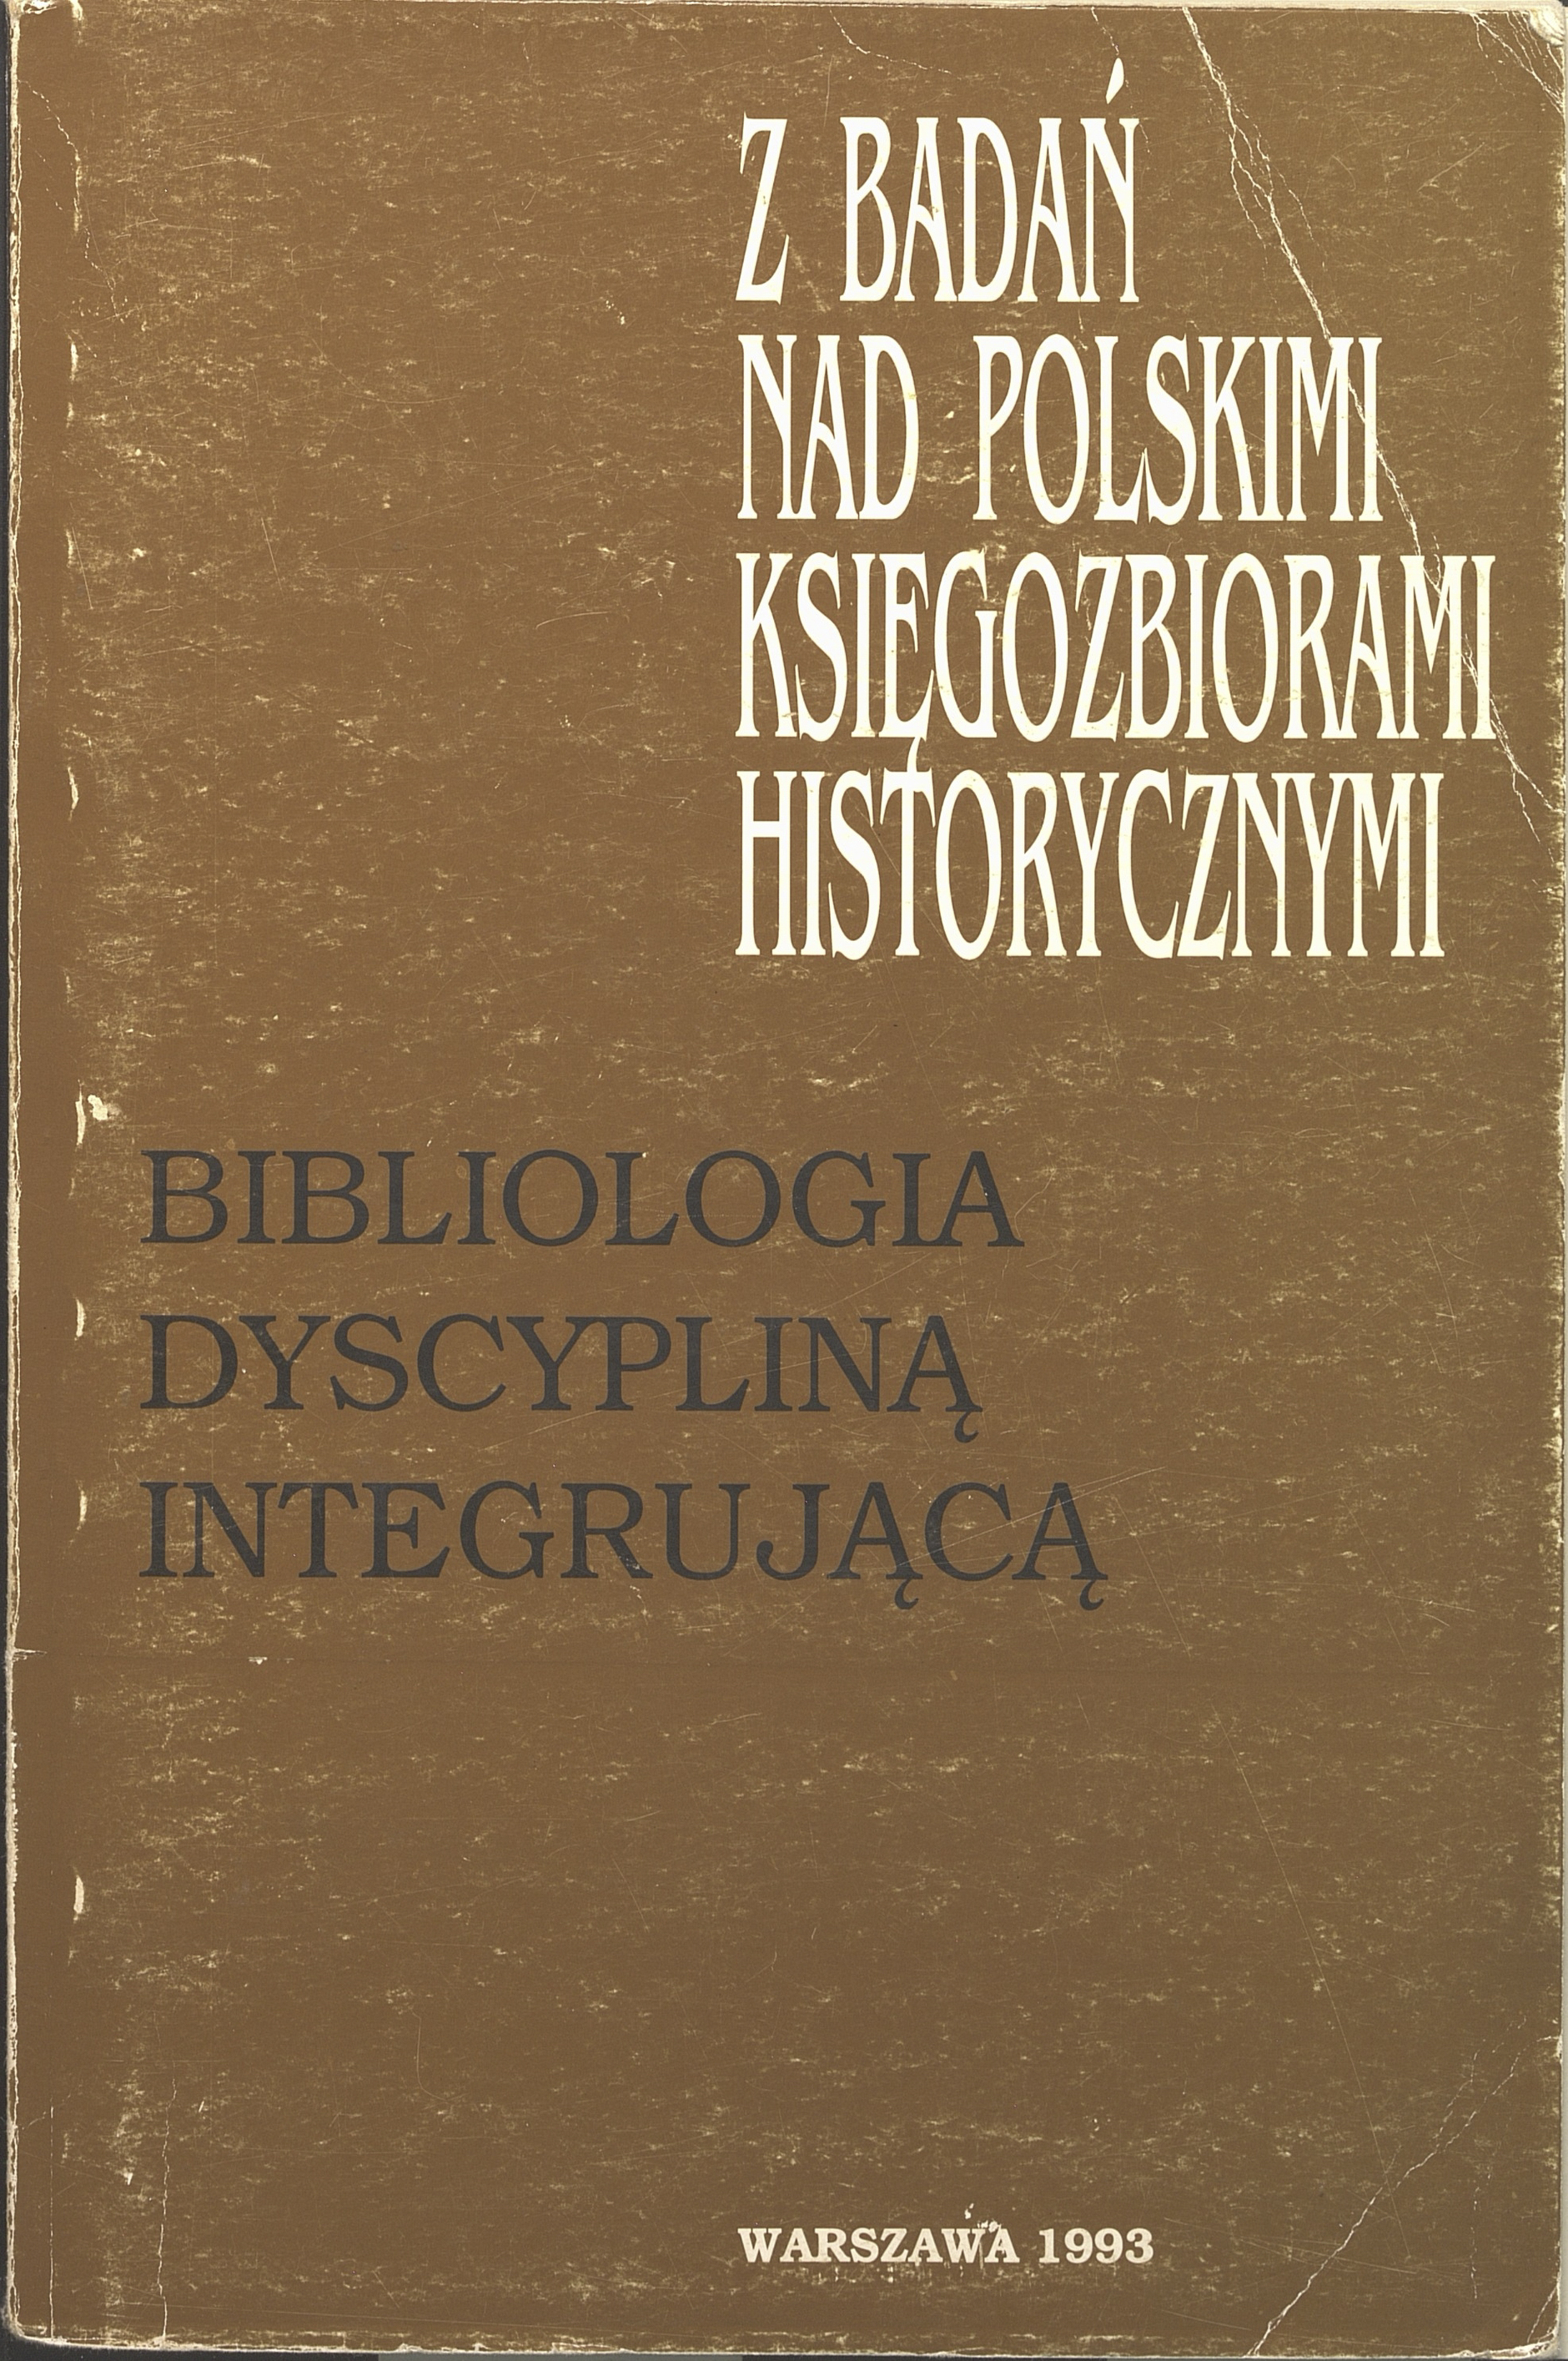 					Pokaż  1993: Z Badań nad Polskimi Księgozbiorami Historycznymi - Zeszyt 13
				